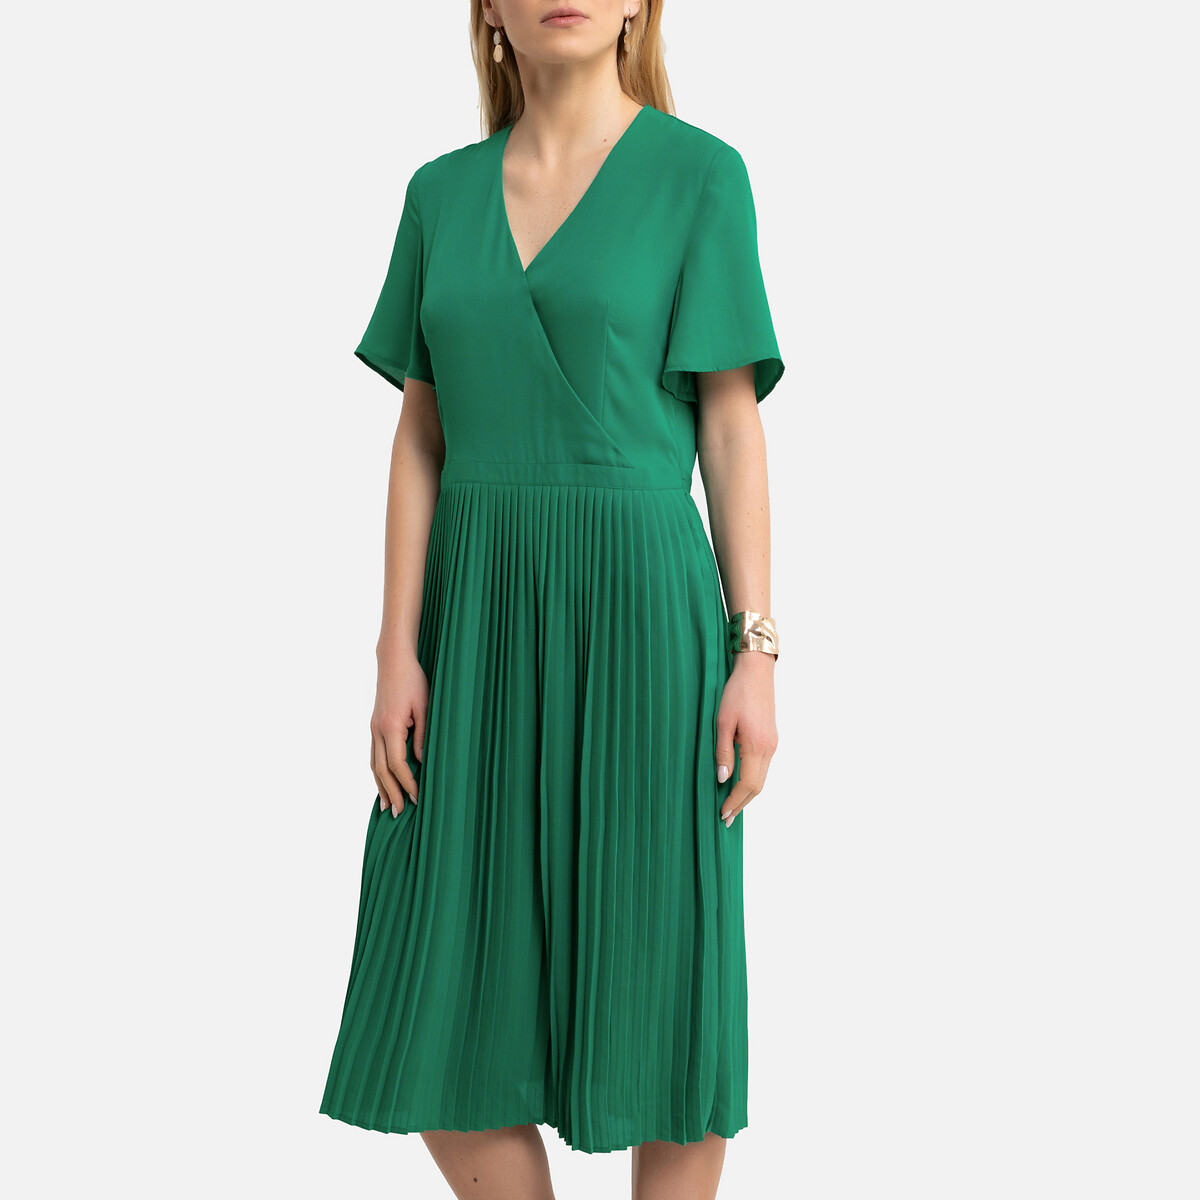 Платье-миди LaRedoute Плиссированное с короткими рукавами 36 (FR) - 42 (RUS) зеленый, размер 36 (FR) - 42 (RUS) Плиссированное с короткими рукавами 36 (FR) - 42 (RUS) зеленый - фото 1